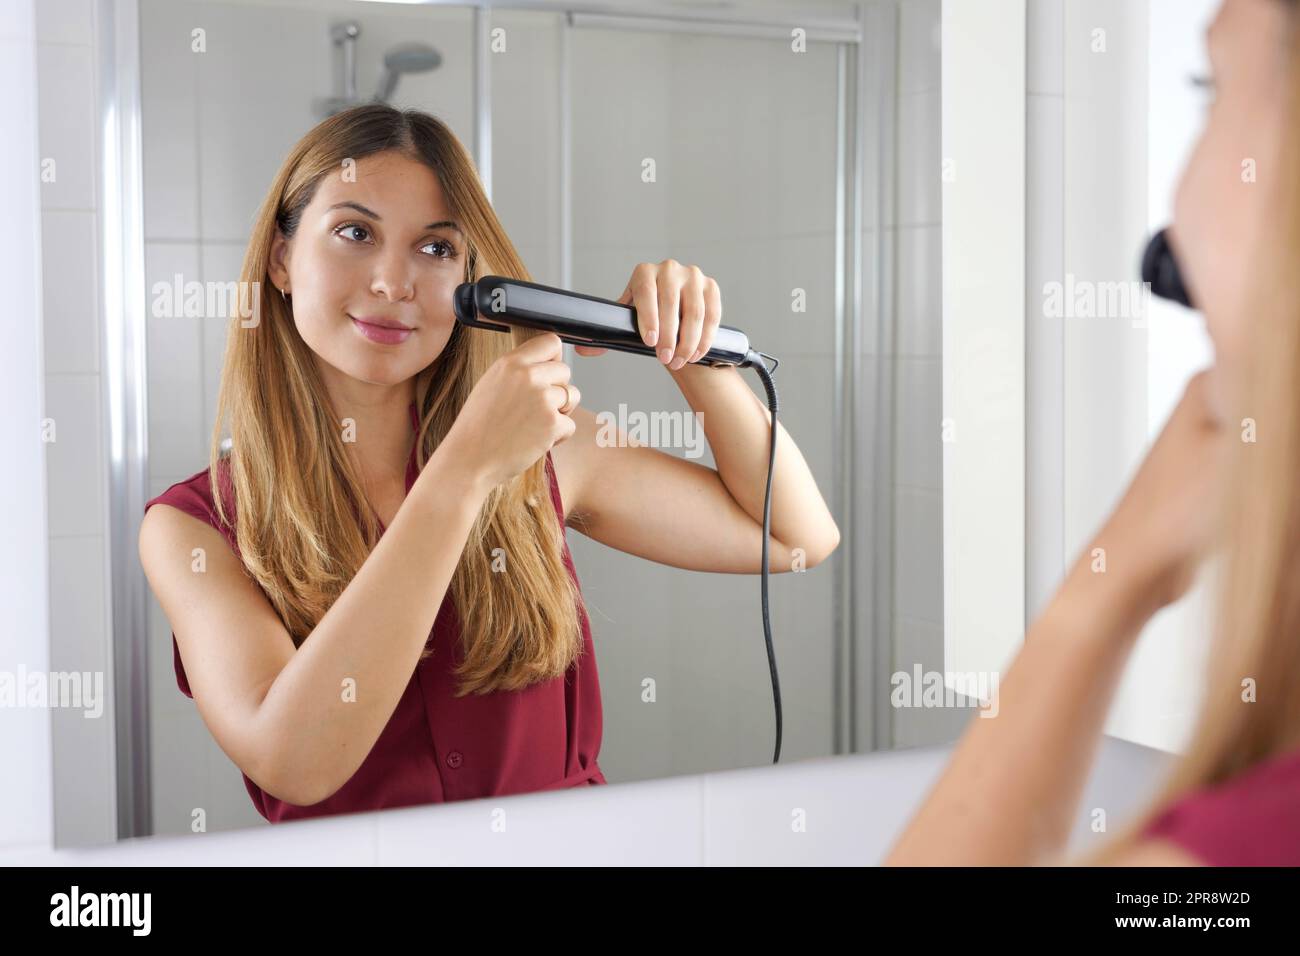 Belle jeune femme utilisant le streptocoque pour lisser les cheveux d'une manière facile à la maison Banque D'Images